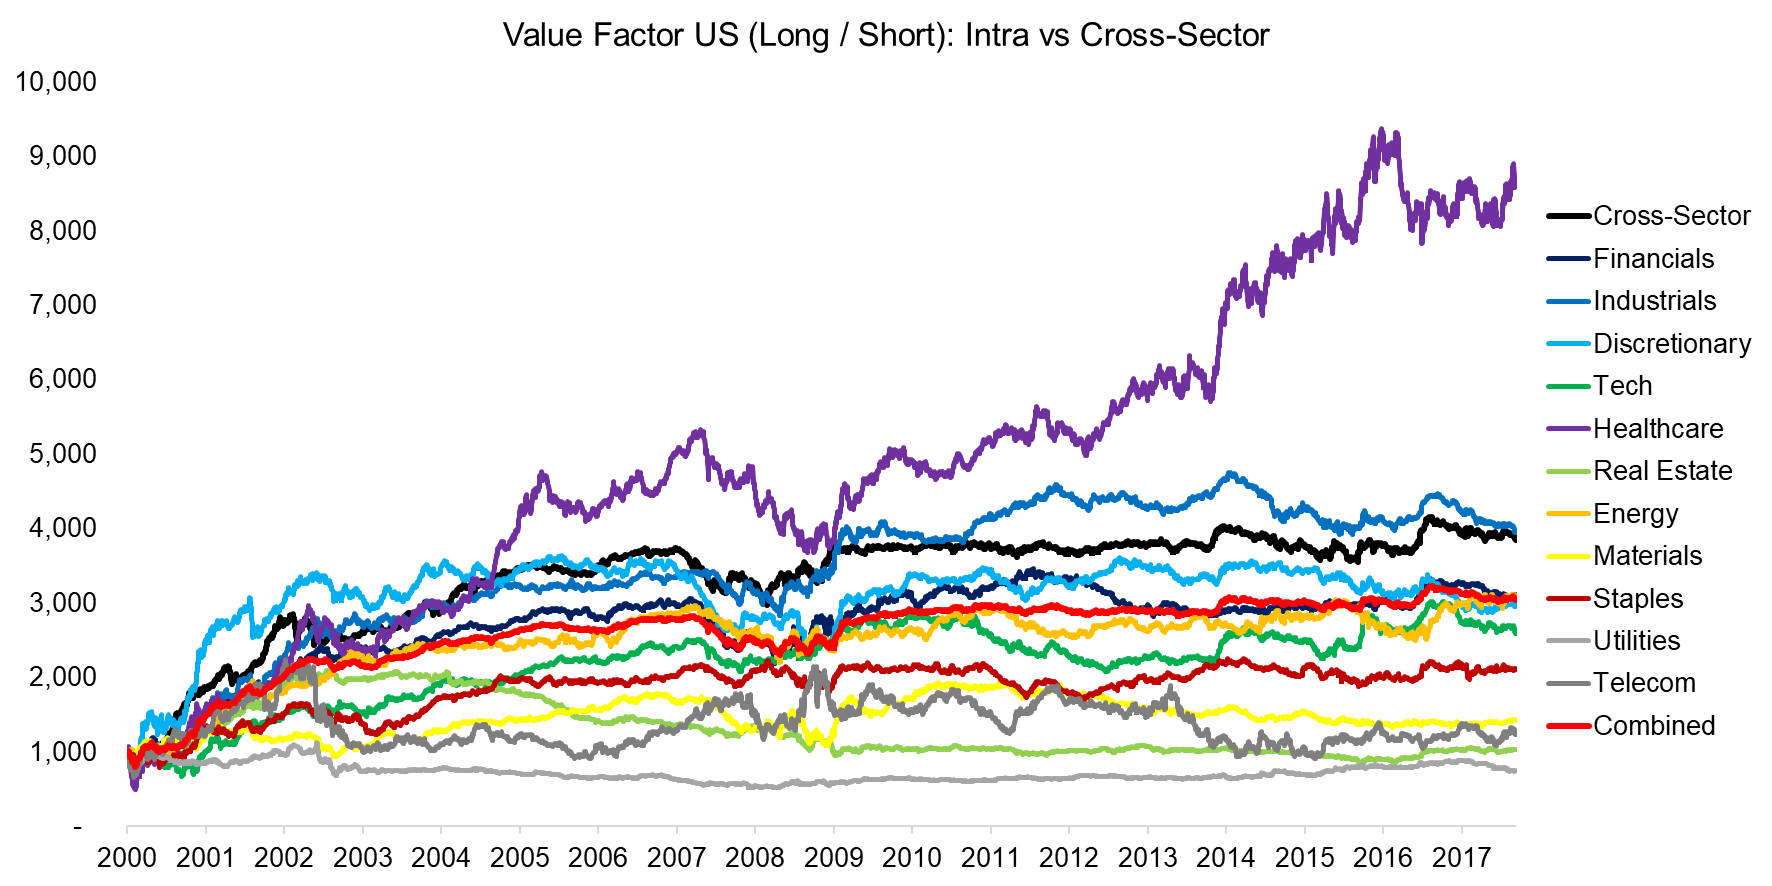 Value Factor US (Long Short) Intra vs Cross-Sector